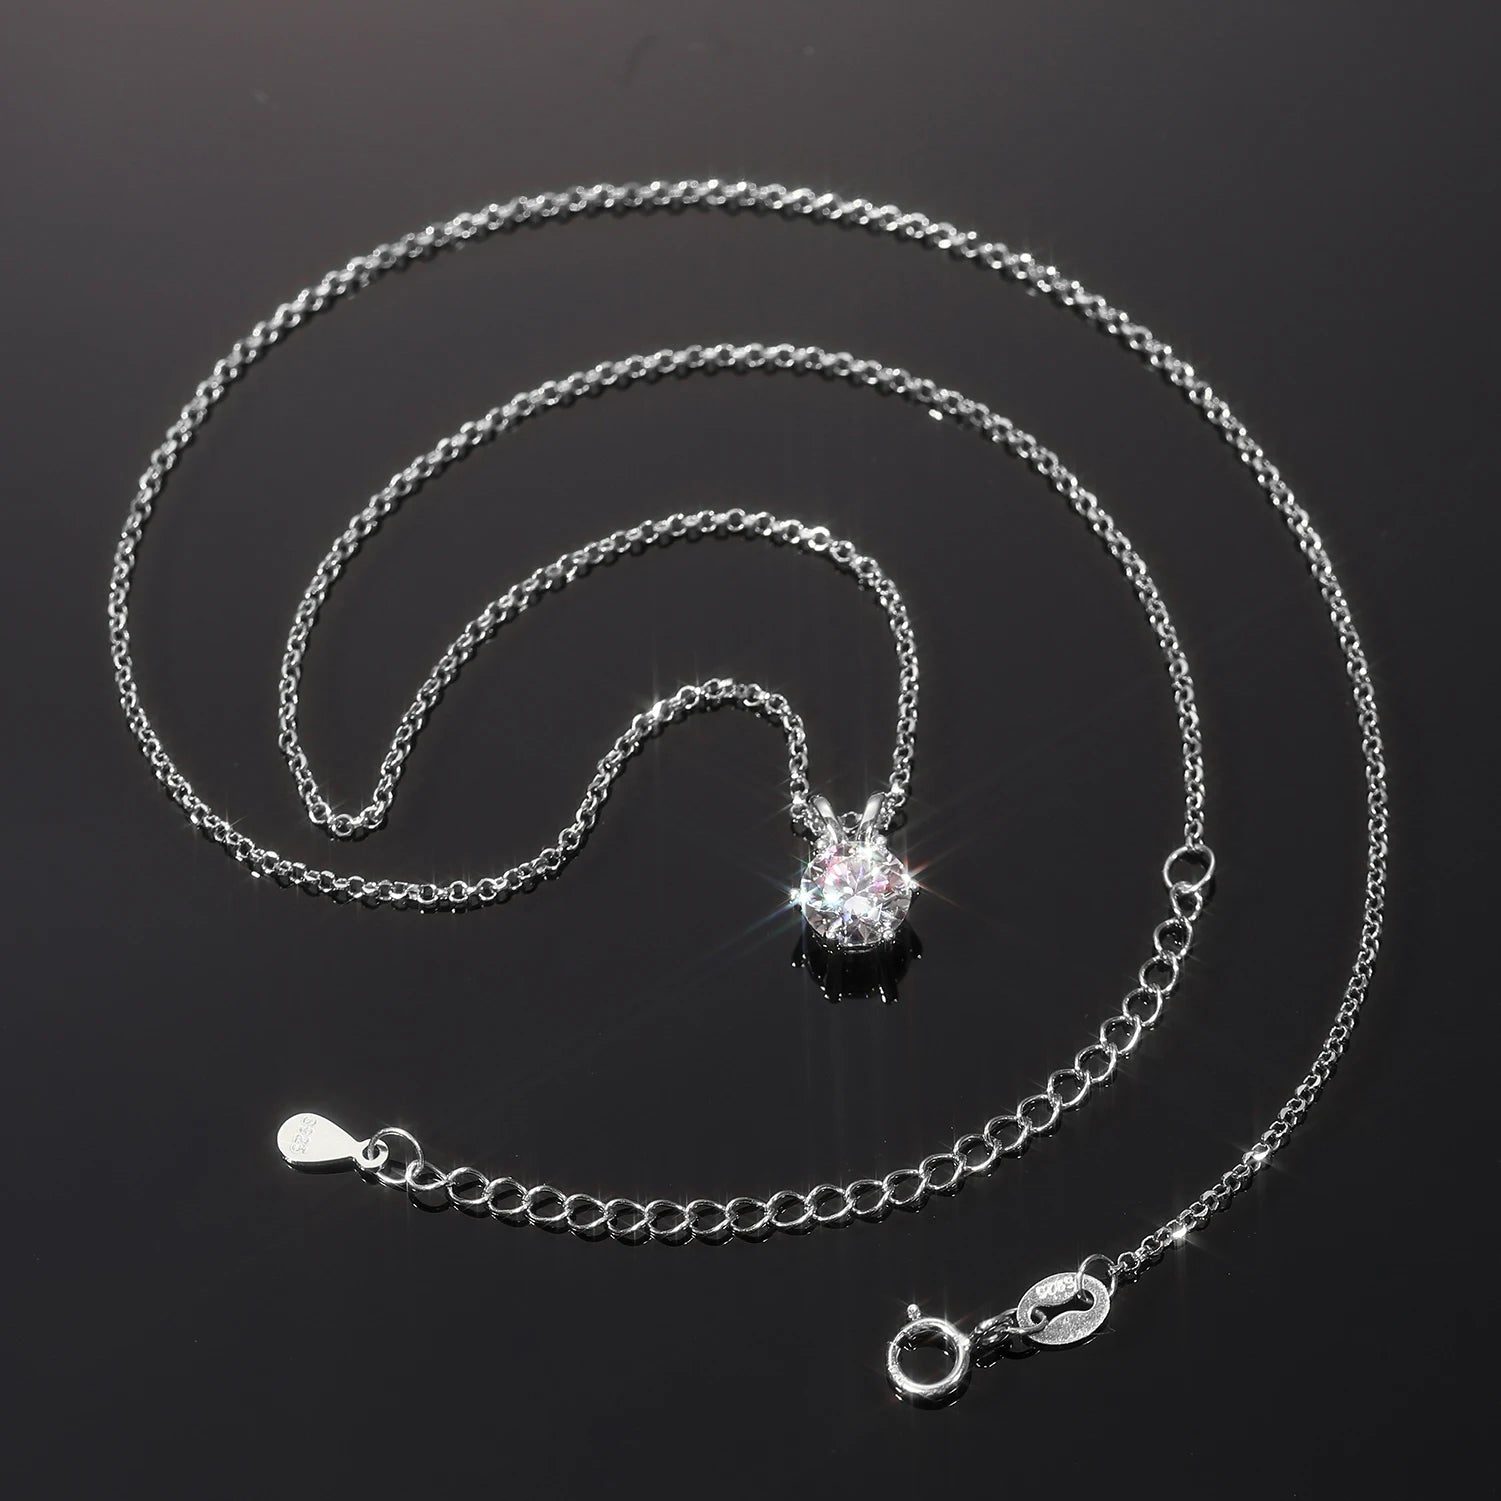 S925 1 Carat Round Cut Moissanite Pendant Necklace & Ring (Bundle Set)